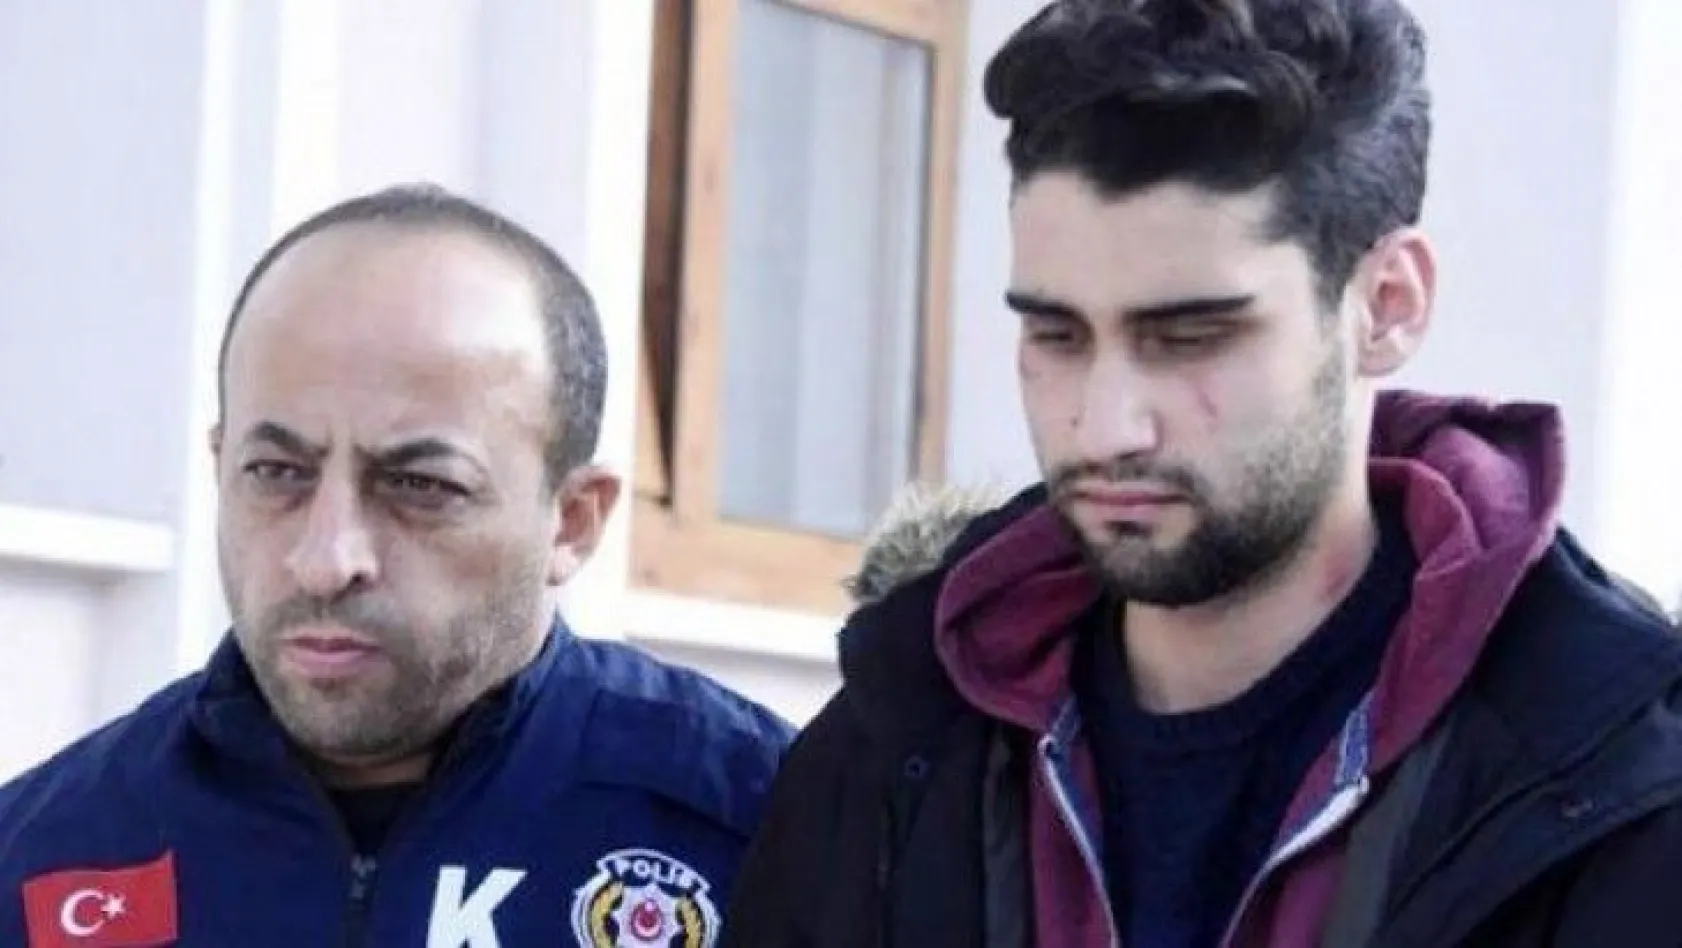 Öldürülen Özgür Duran'ın ailesinden şaşırtan iddia: Kadir Şeker kiralık katildi